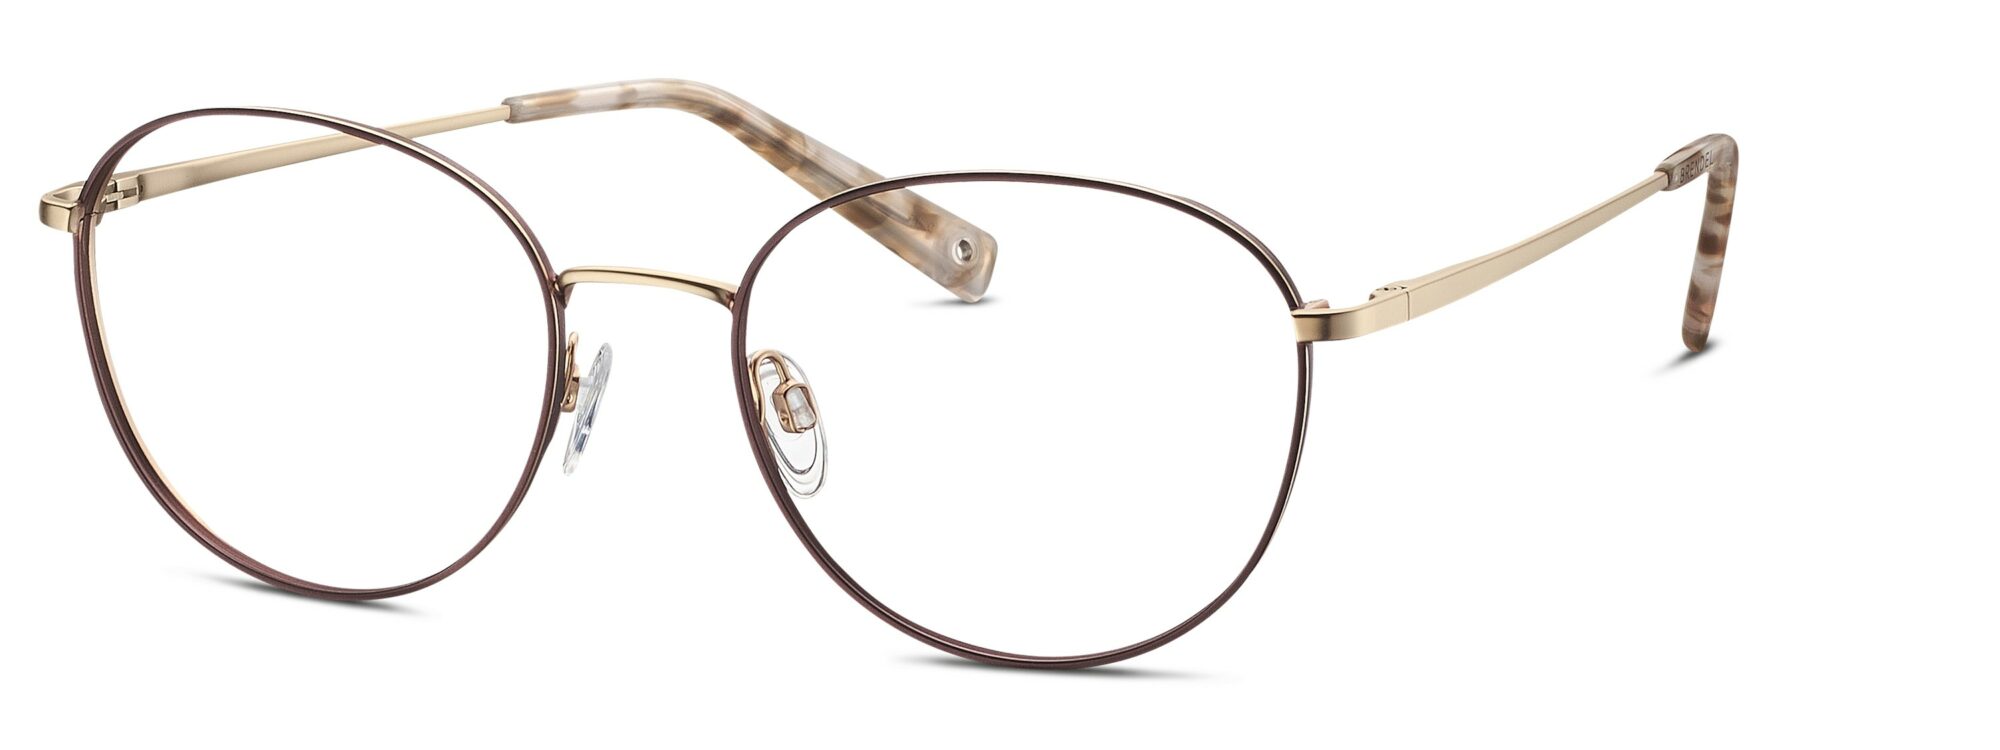 BRENDEL eyewear - 902359-60